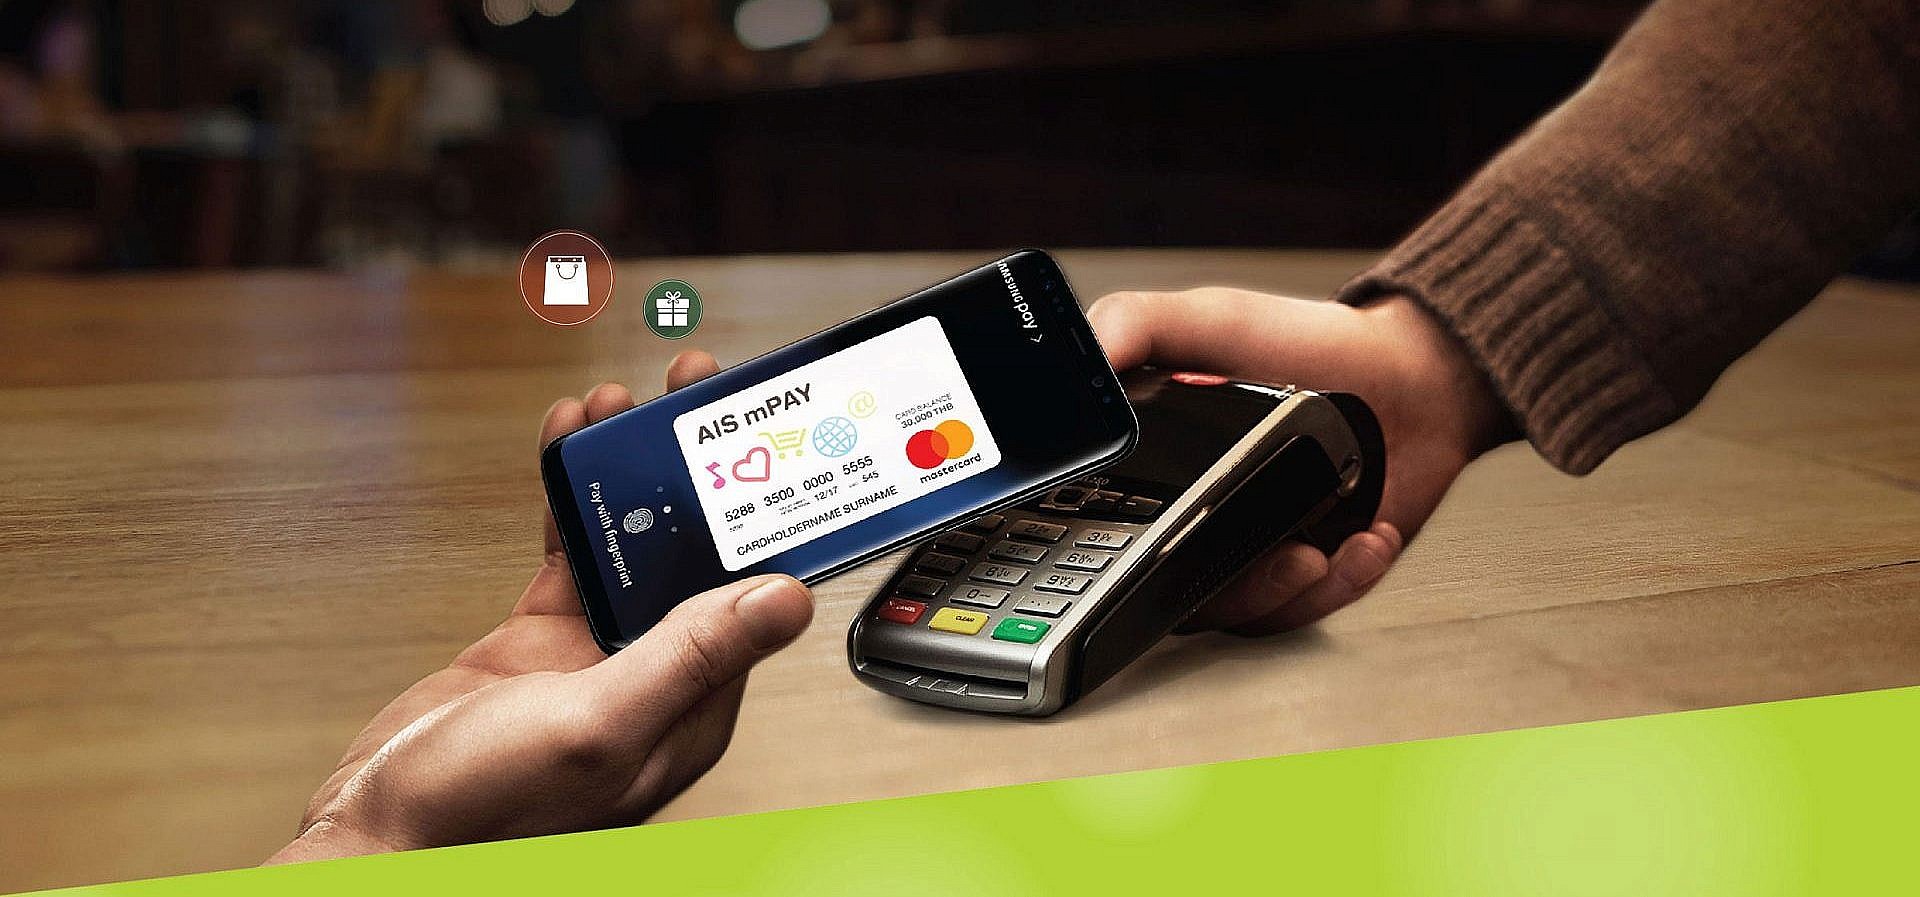 ไม่มีบัตรเครดิตแต่อยากแตะมือถือจ่ายเงินได้? ง่ายๆ ใช้ AIS mPAY Mastercard x Samsung Pay สิ